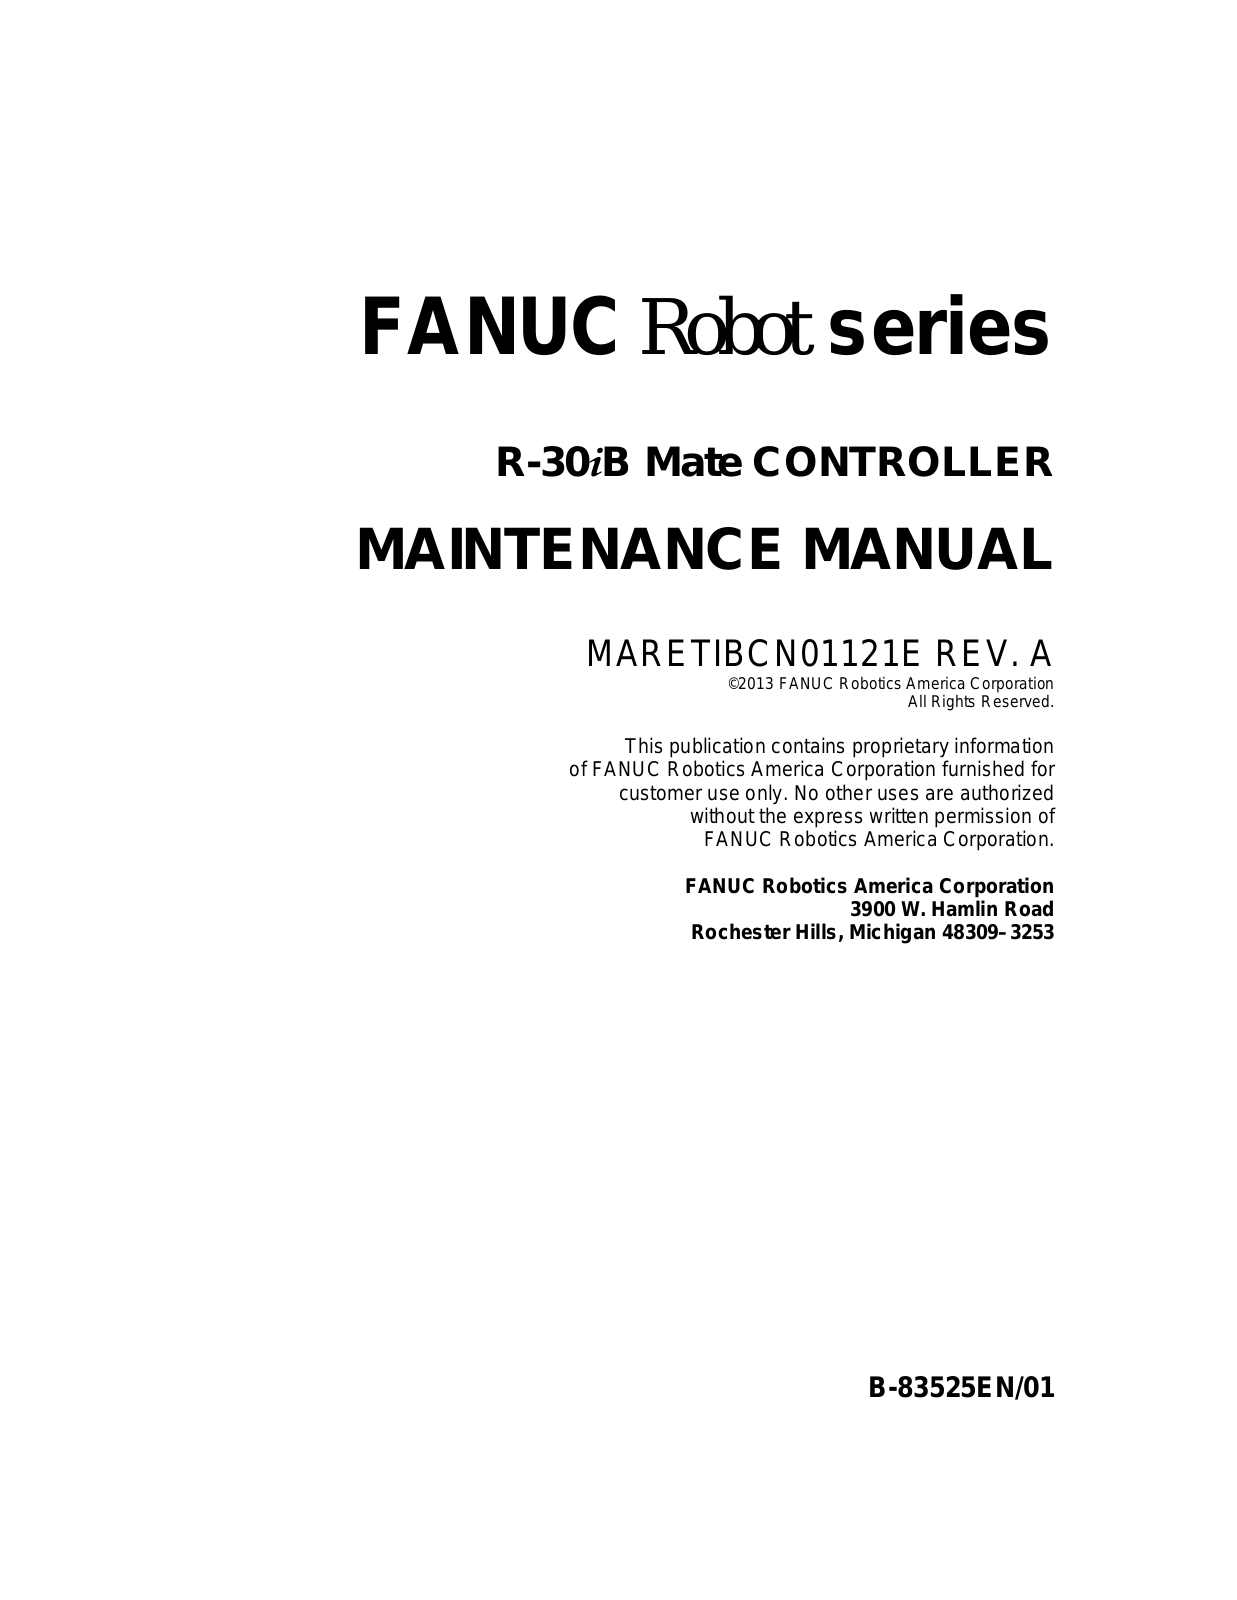 fanuc R-30iB Maintenance Manual